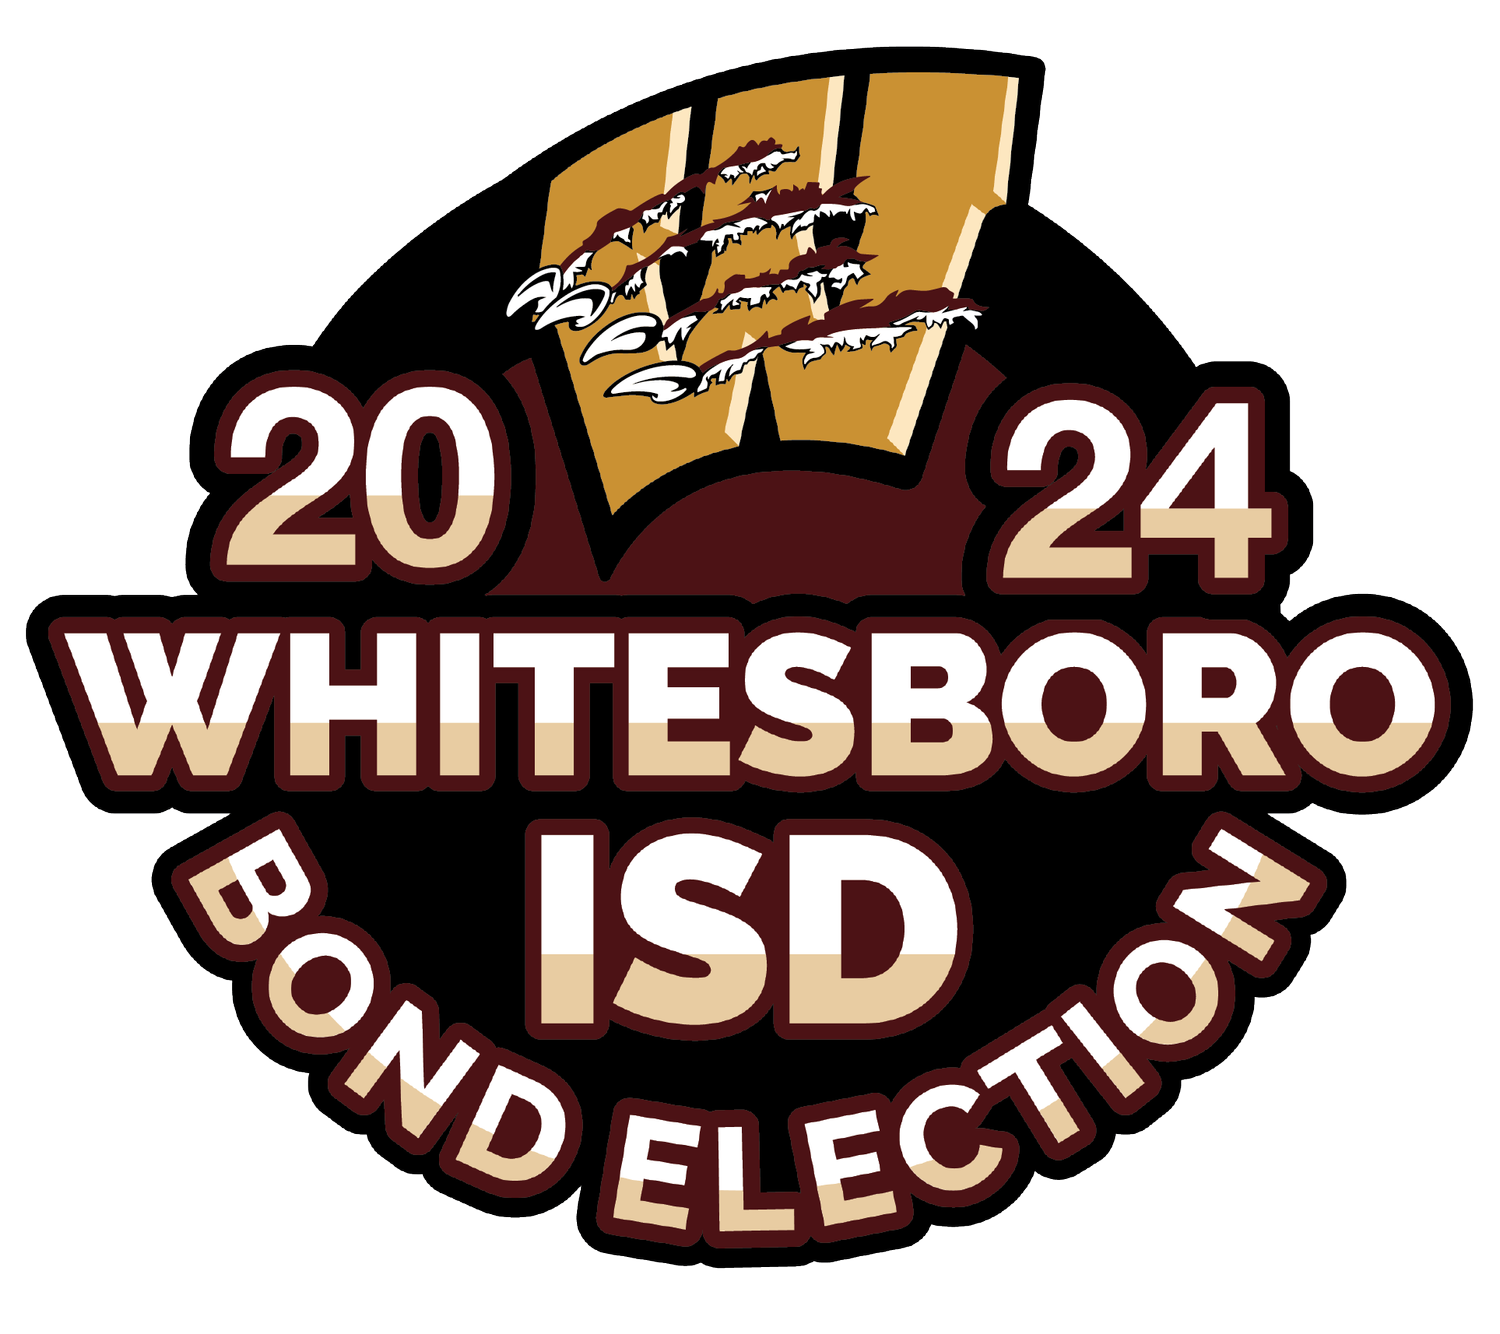 Whitesboro ISD May 2024 Bond 